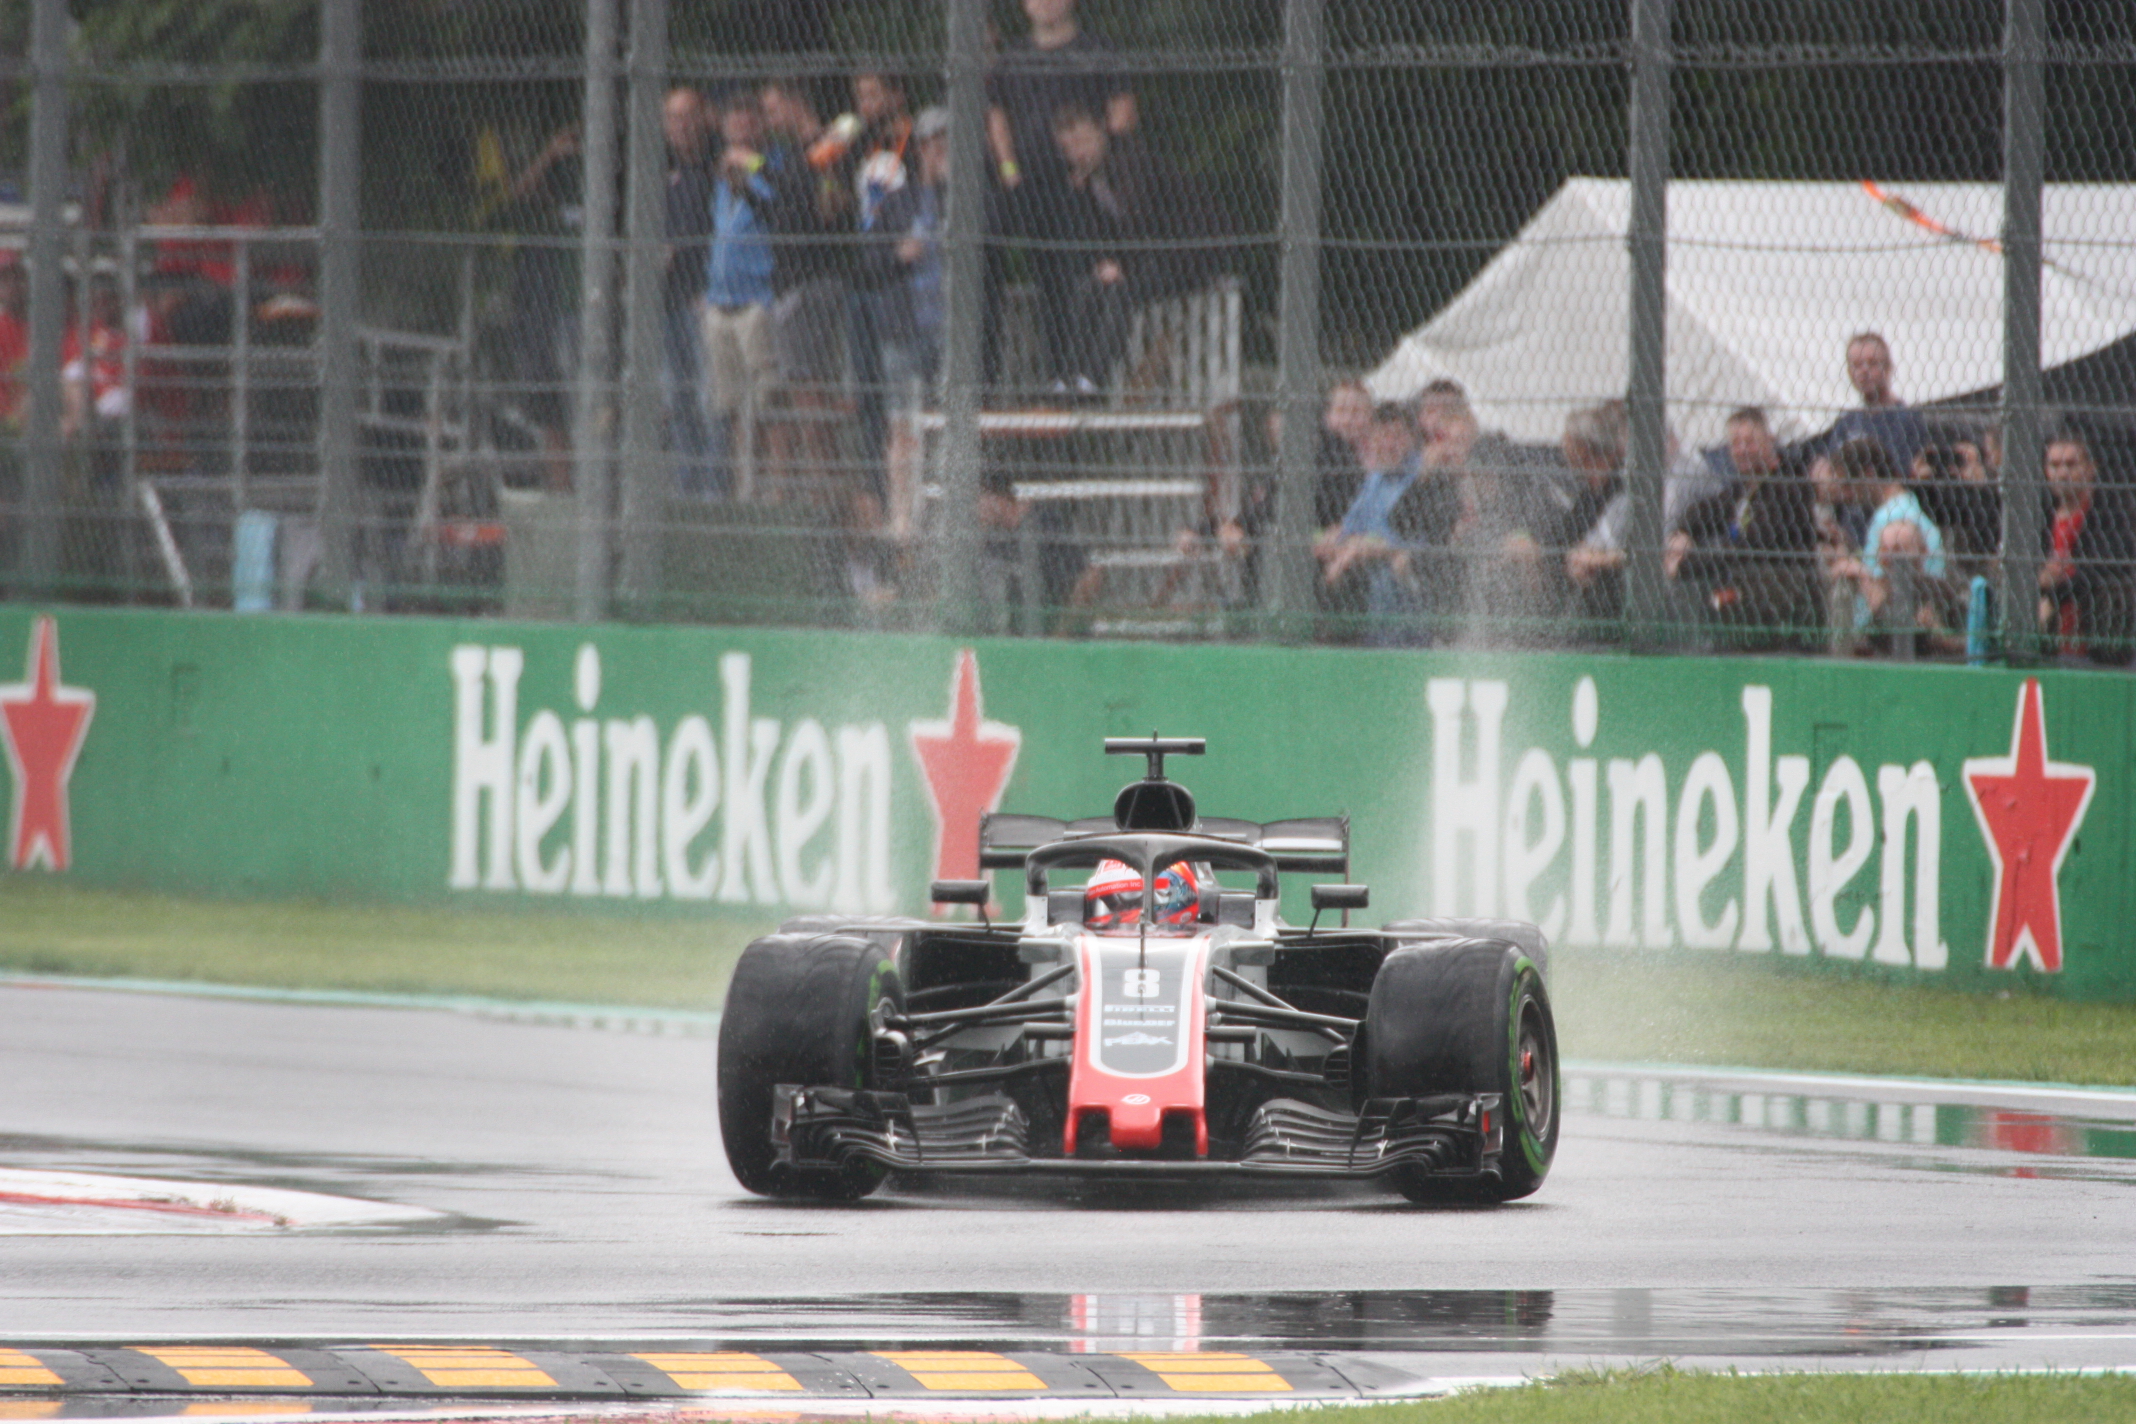 - Romain Grosjean podal v Královském parku dost dobrý výkon. Po výborném 6. místě v kvalifikaci ho o body za 6. místo ovšem připravila diskvalifikace kvůli aerodynamické nesrovnalosti